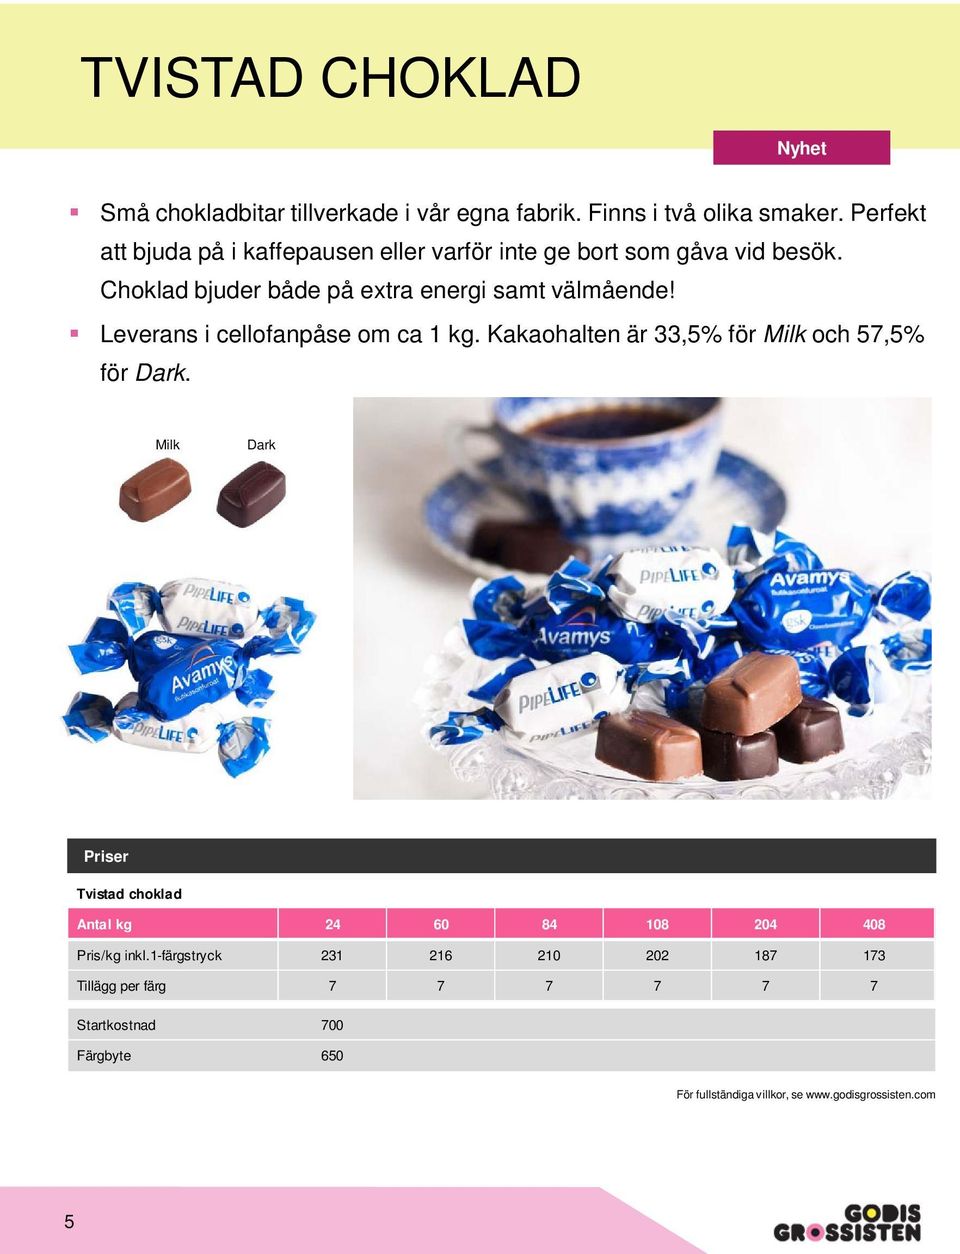 Choklad bjuder både på extra energi samt välmående! Leverans i cellofanpåse om ca 1 kg.